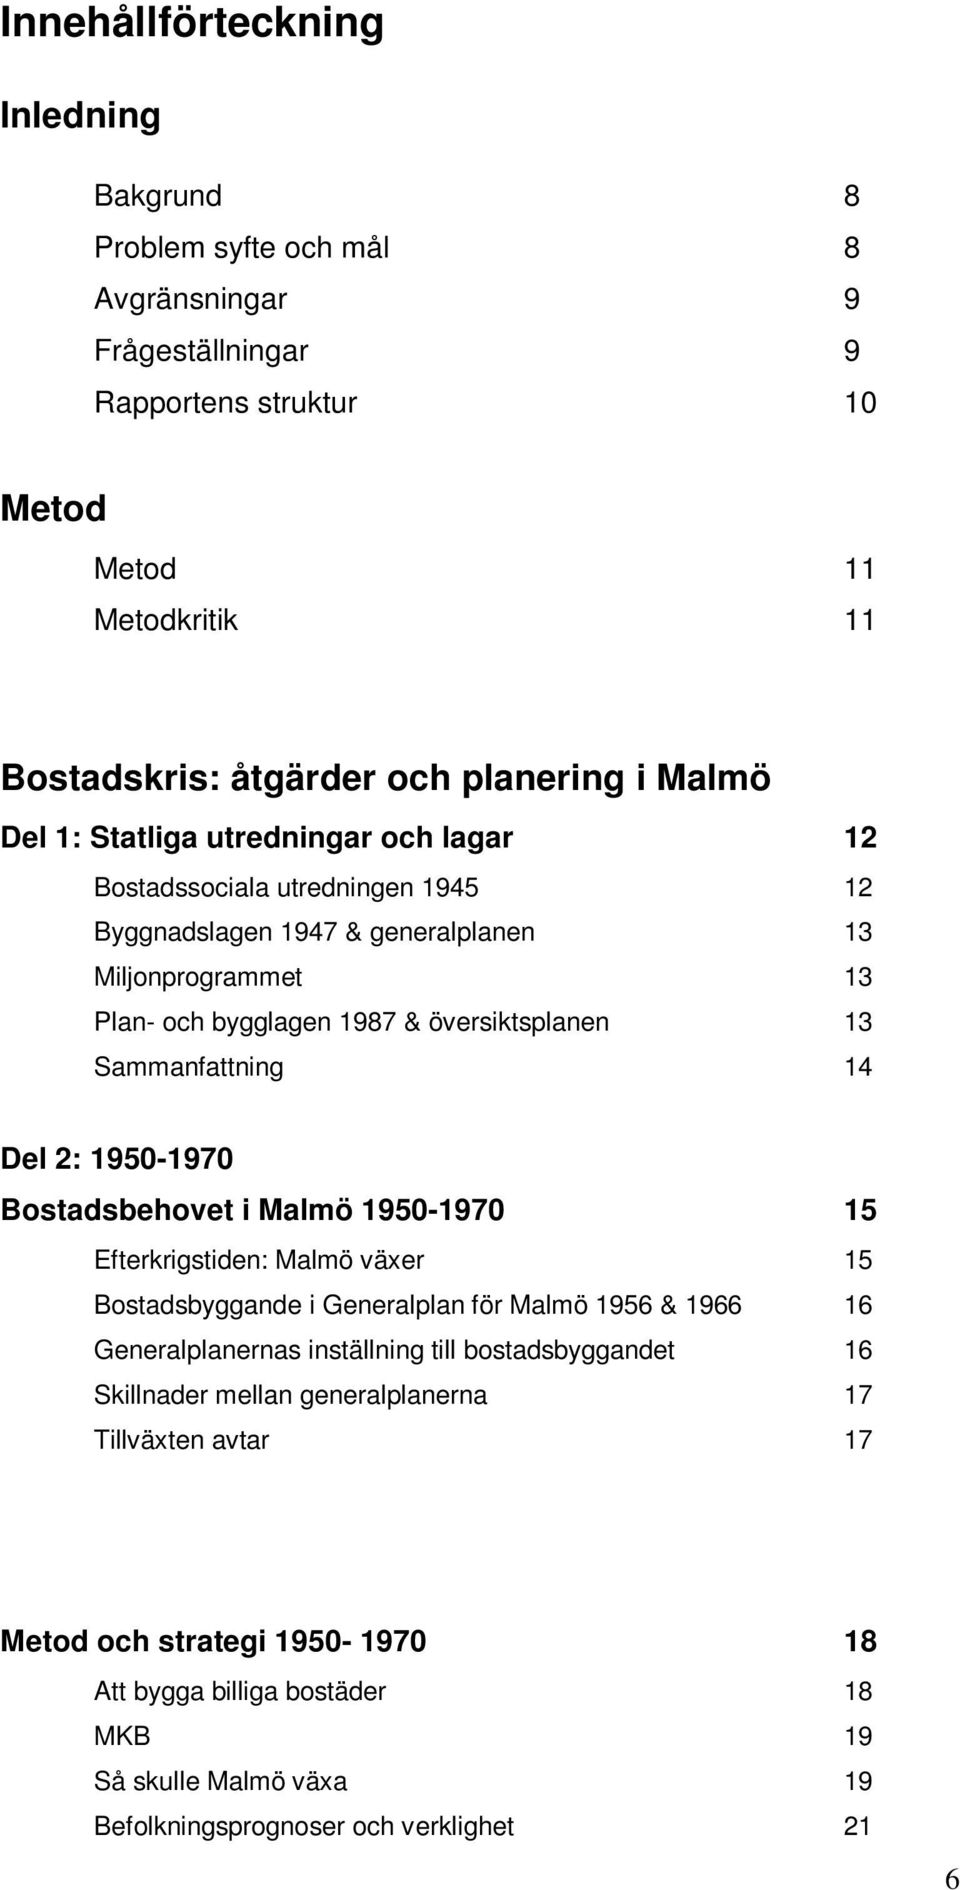 Sammanfattning 14 Del 2: 1950-1970 Bostadsbehovet i Malmö 1950-1970 15 Efterkrigstiden: Malmö växer 15 Bostadsbyggande i Generalplan för Malmö 1956 & 1966 16 Generalplanernas inställning till